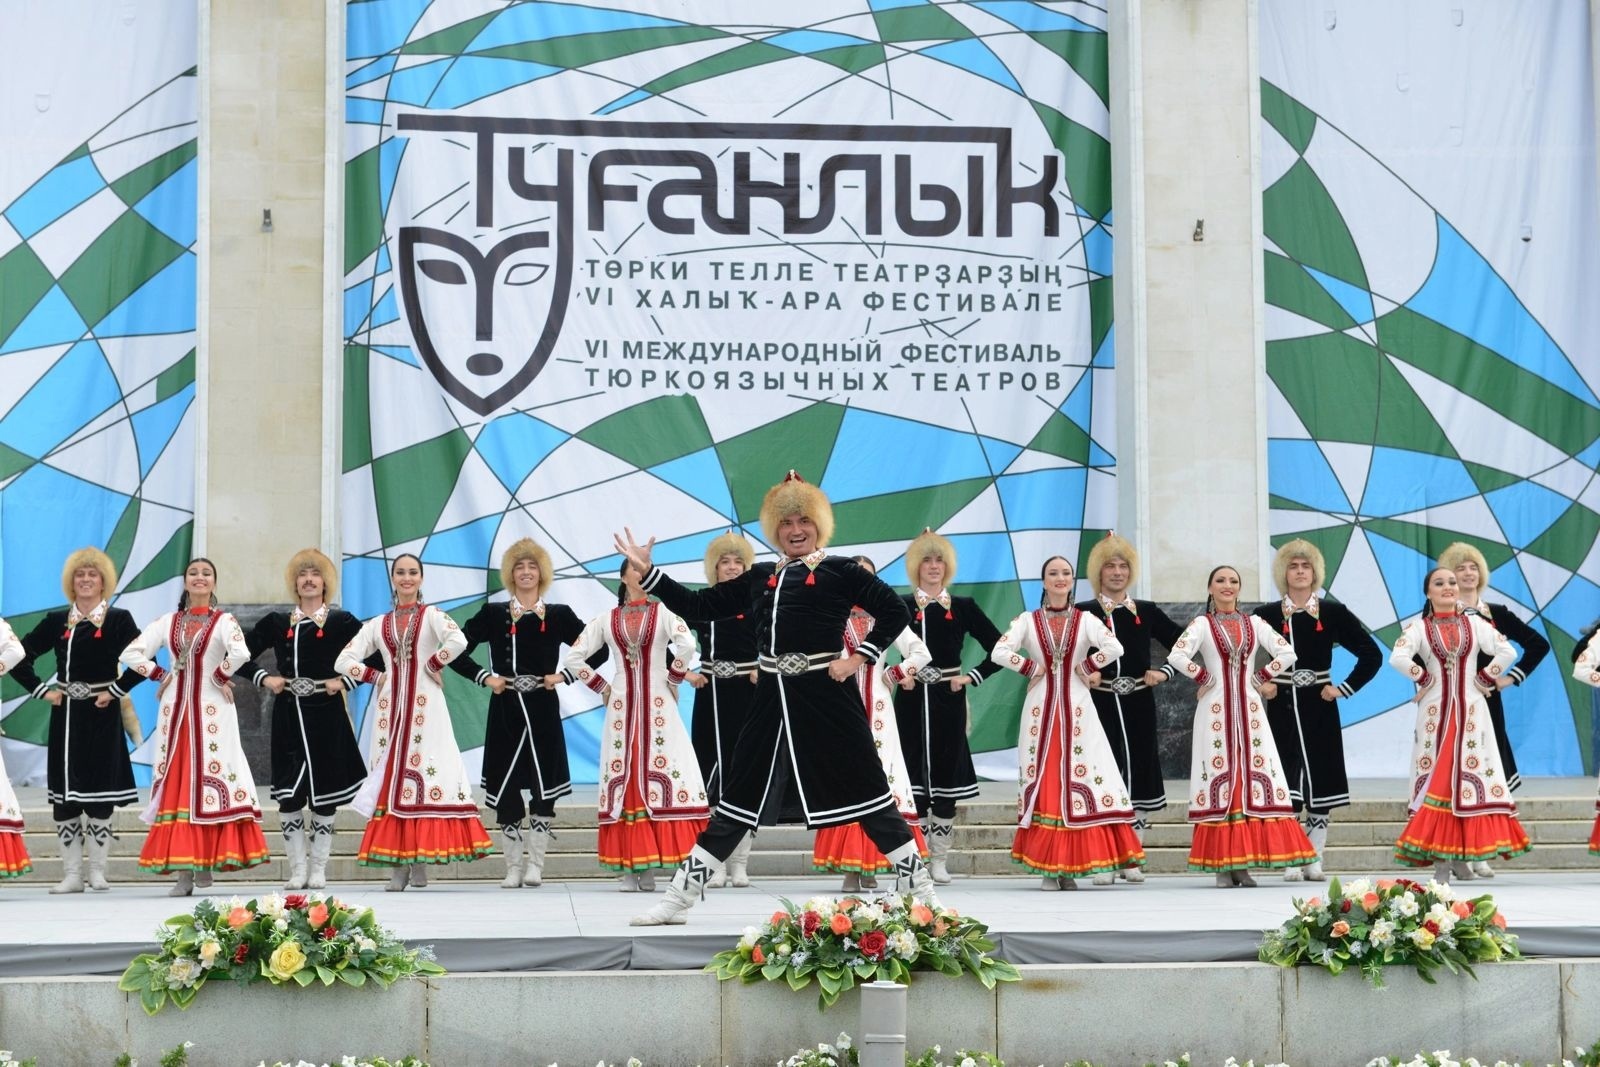 В Уфе проведут фестиваль национальных театров Туганлык